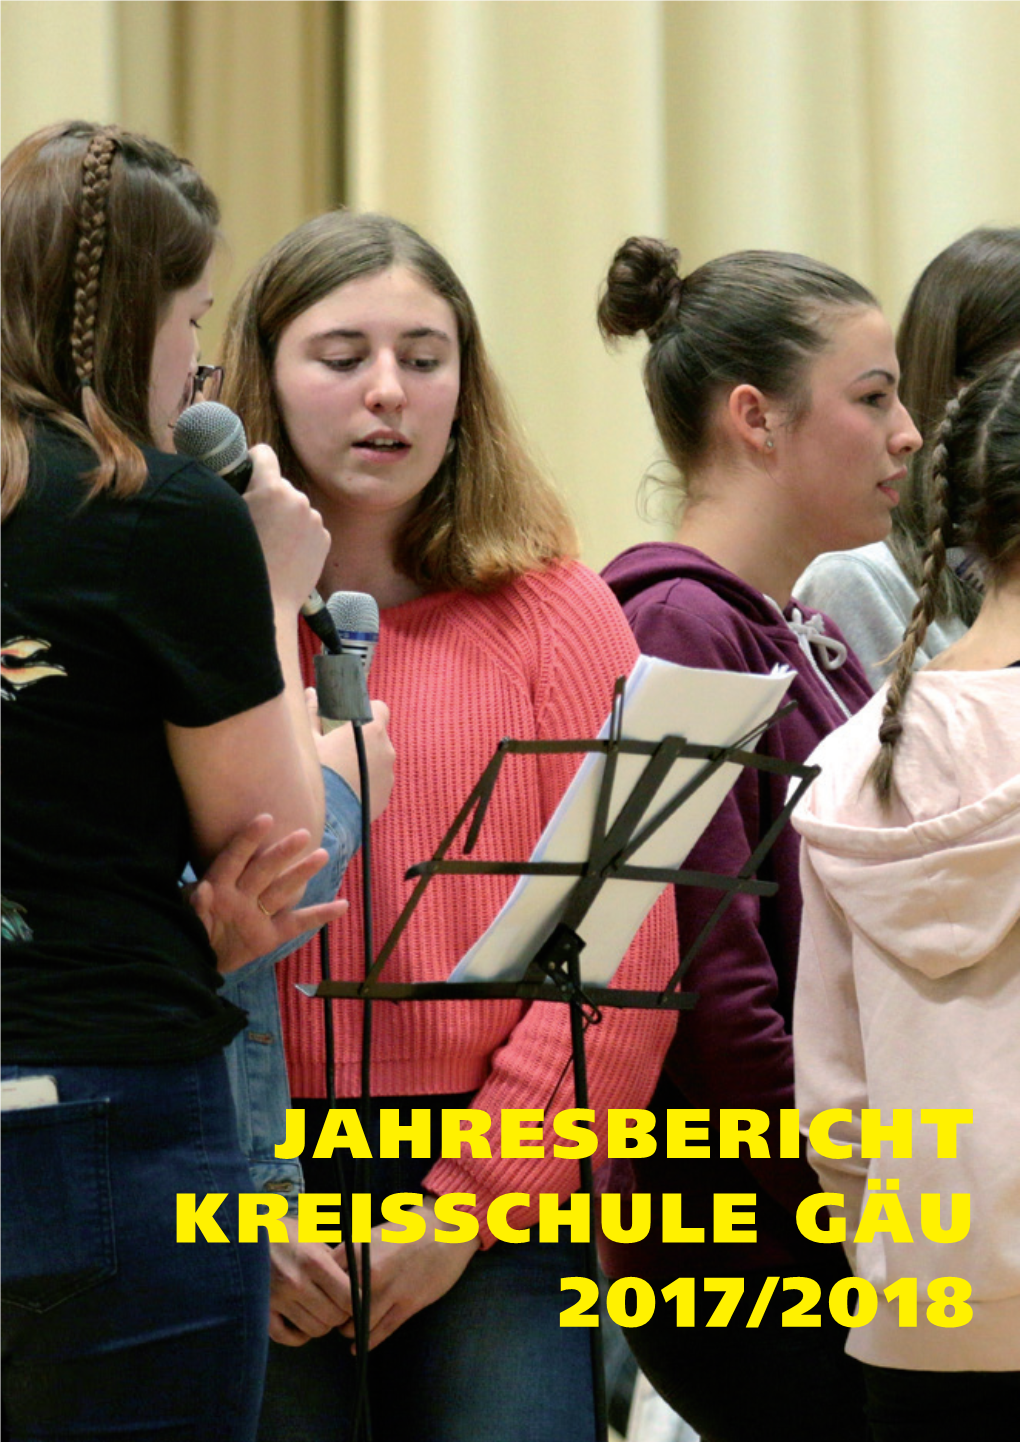 Jahresbericht Kreisschule Gäu 2017/2018